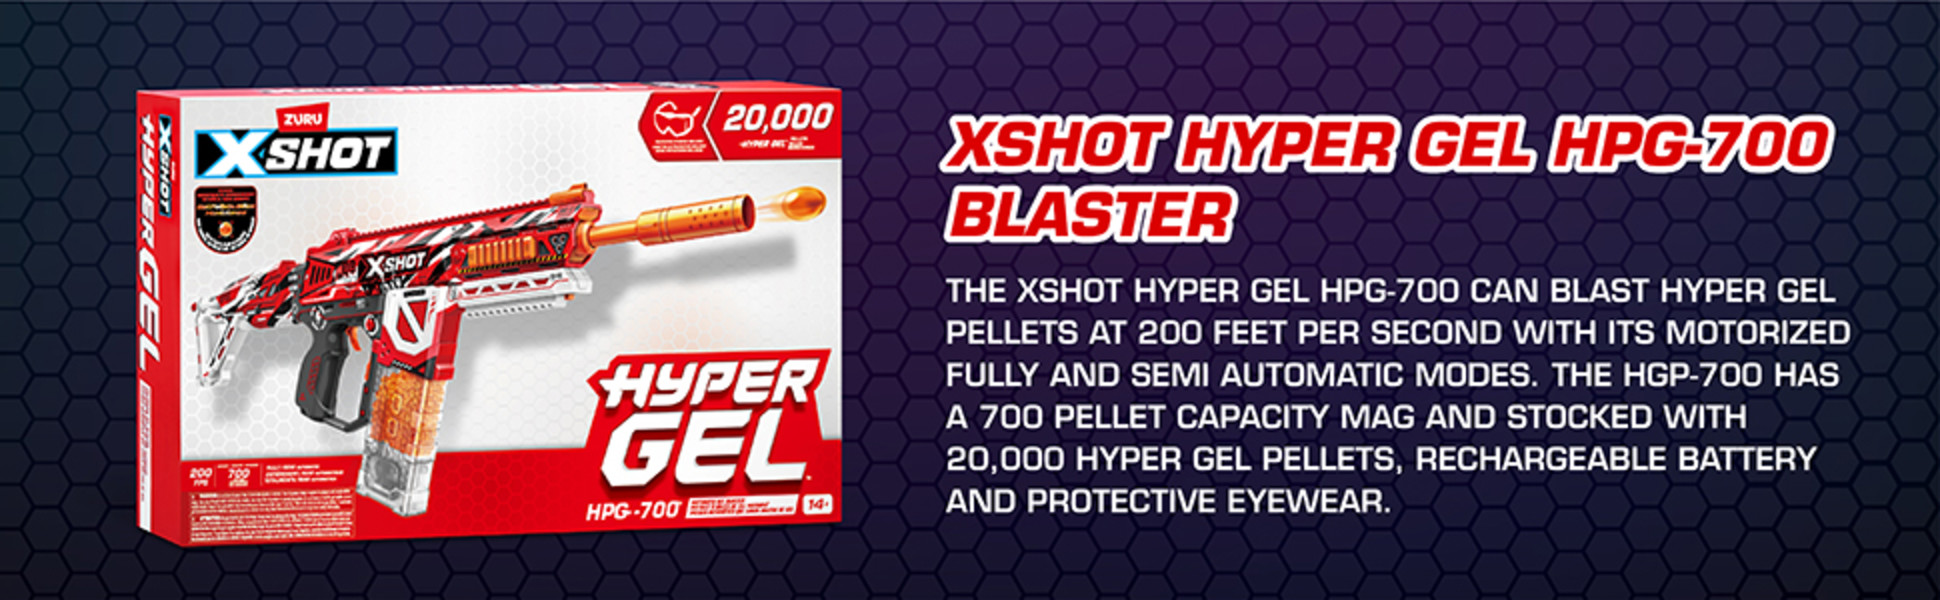 X-Shot Hyper Gel HPG-700 Blaster (20,000 Hyper Gel Pellets) by